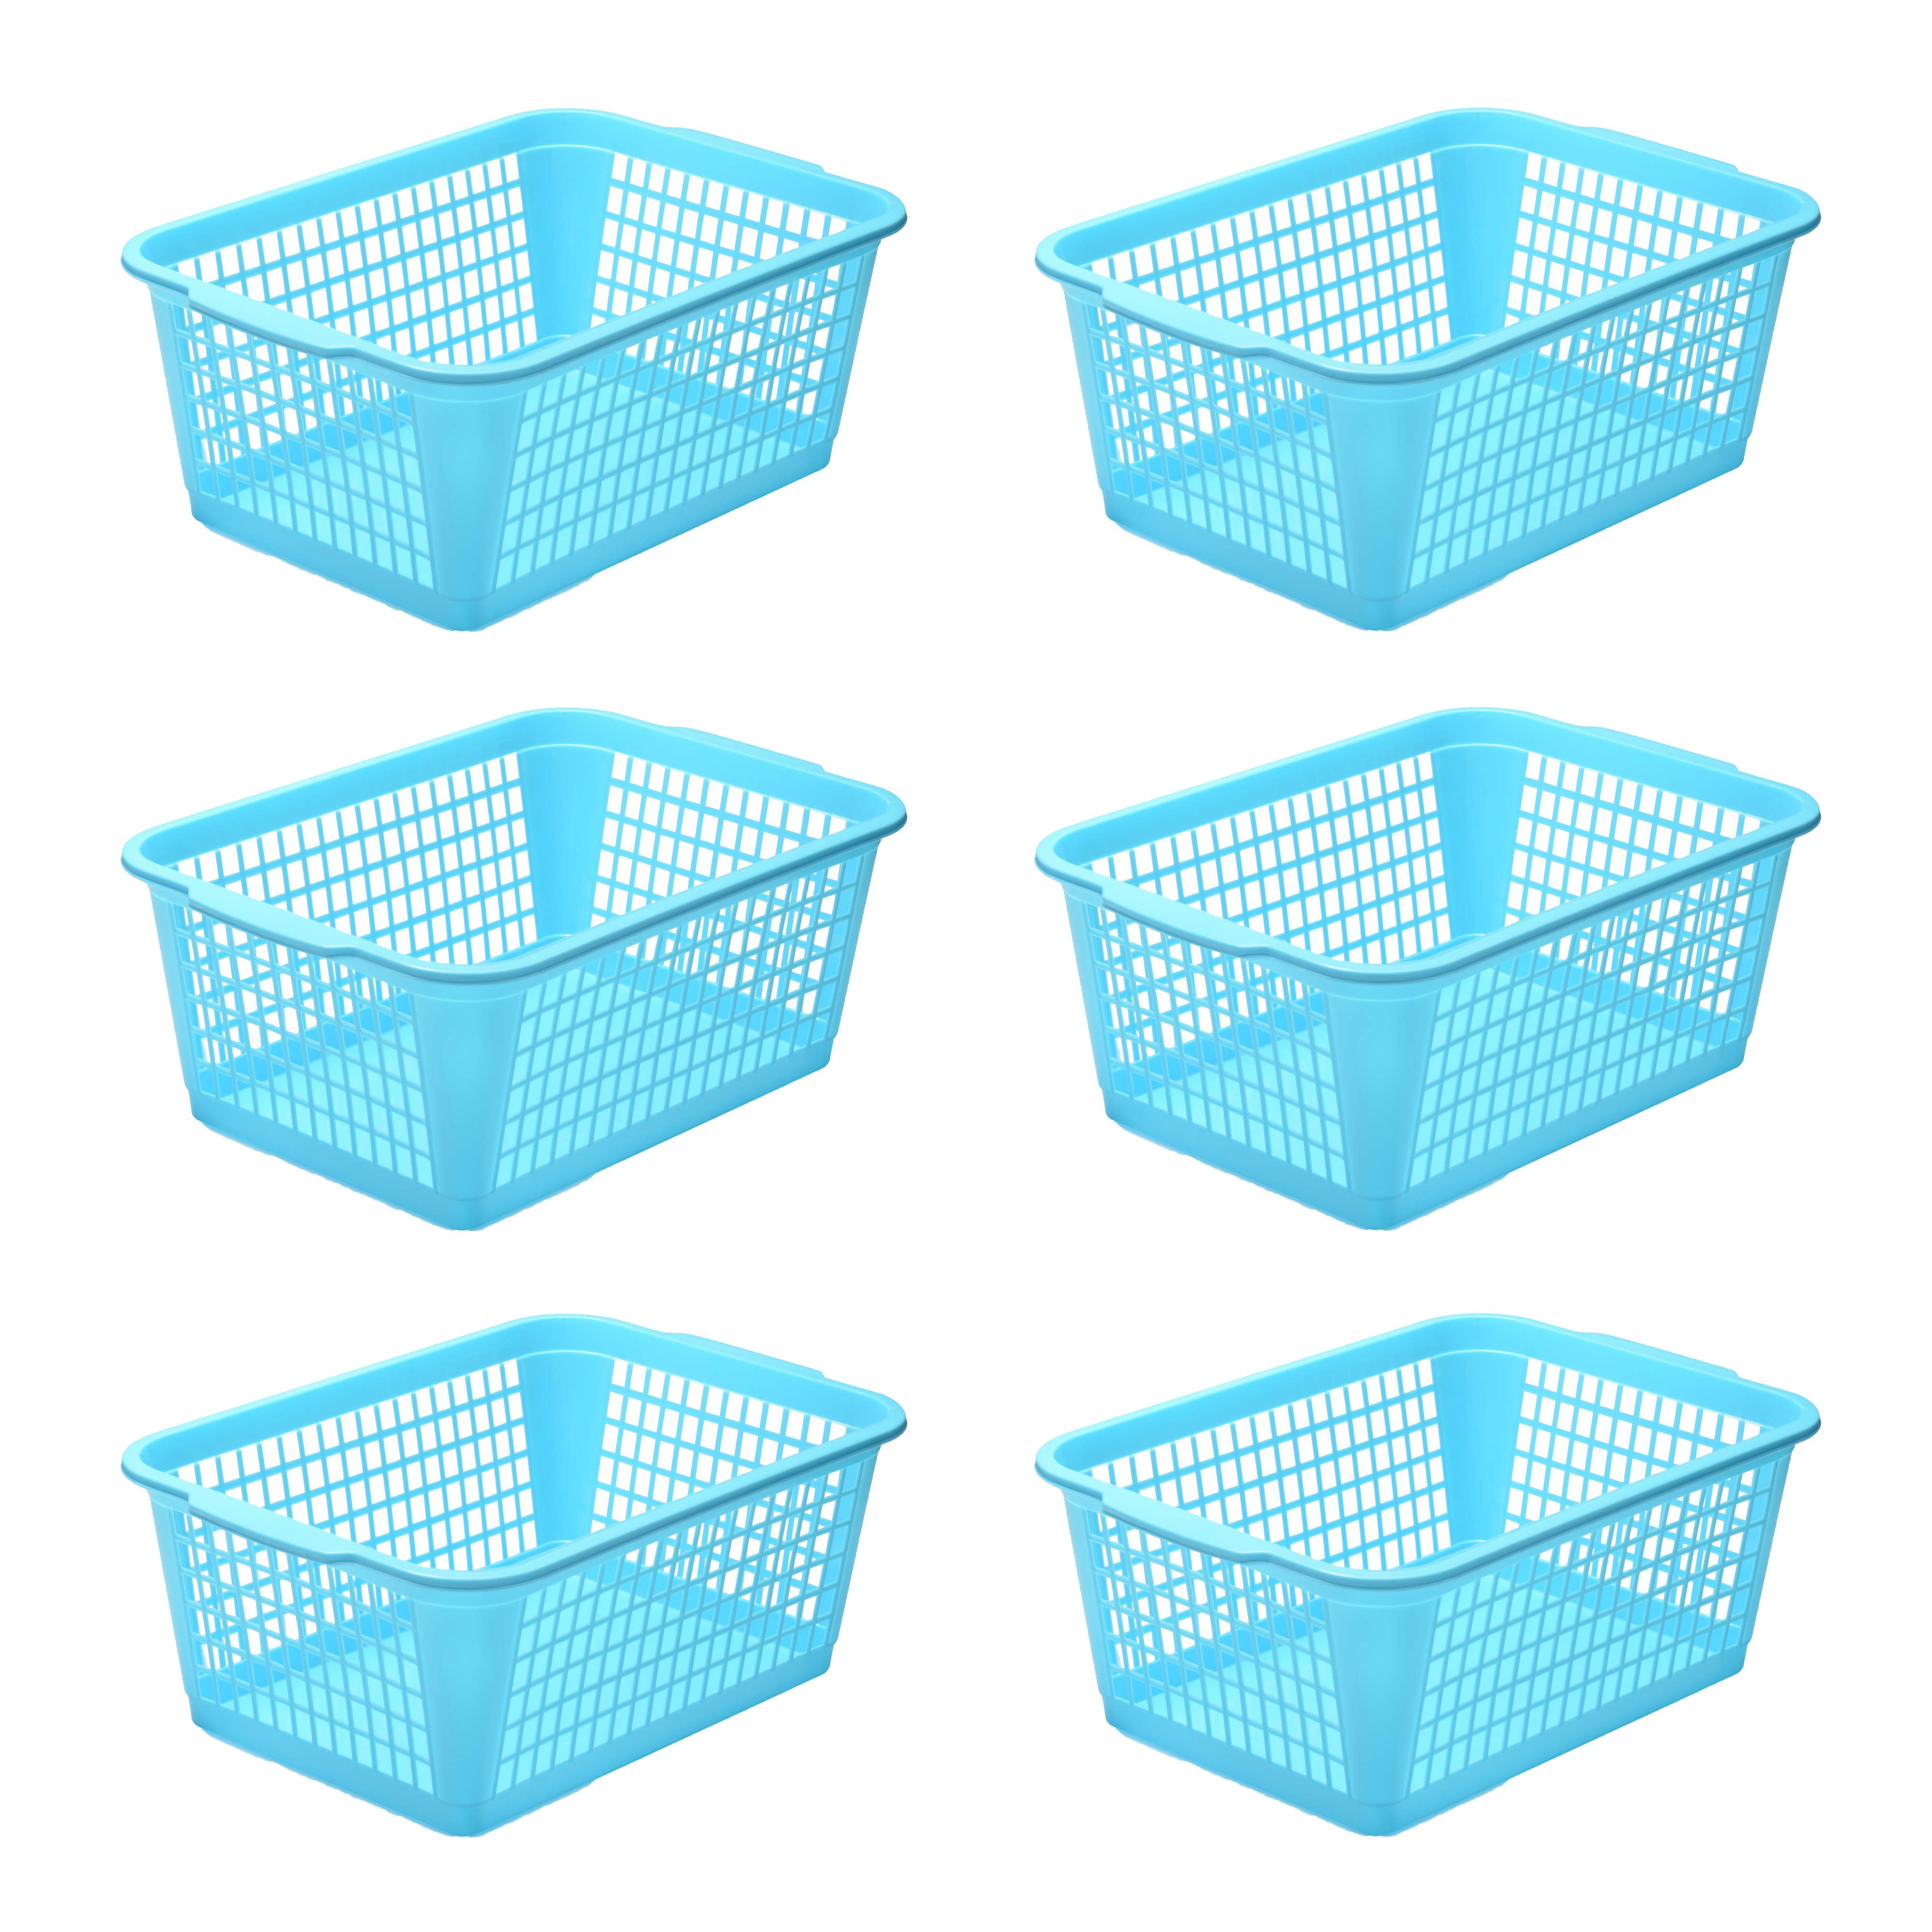 32-1184 YBM Home Large Plastic Storage Basket for Organizing